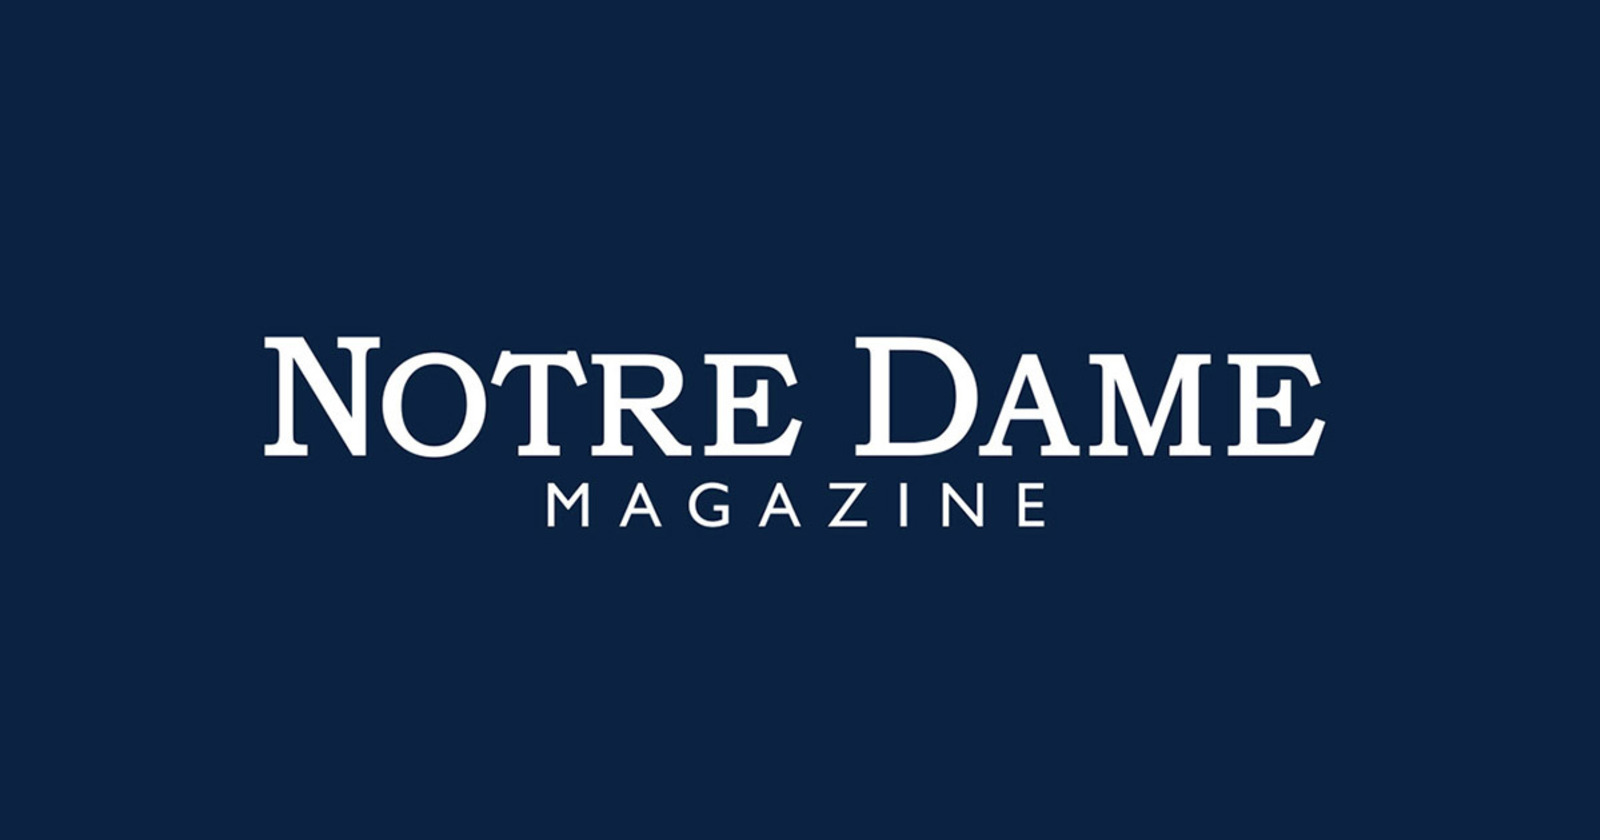 Where kids go fishin', Stories, Notre Dame Magazine